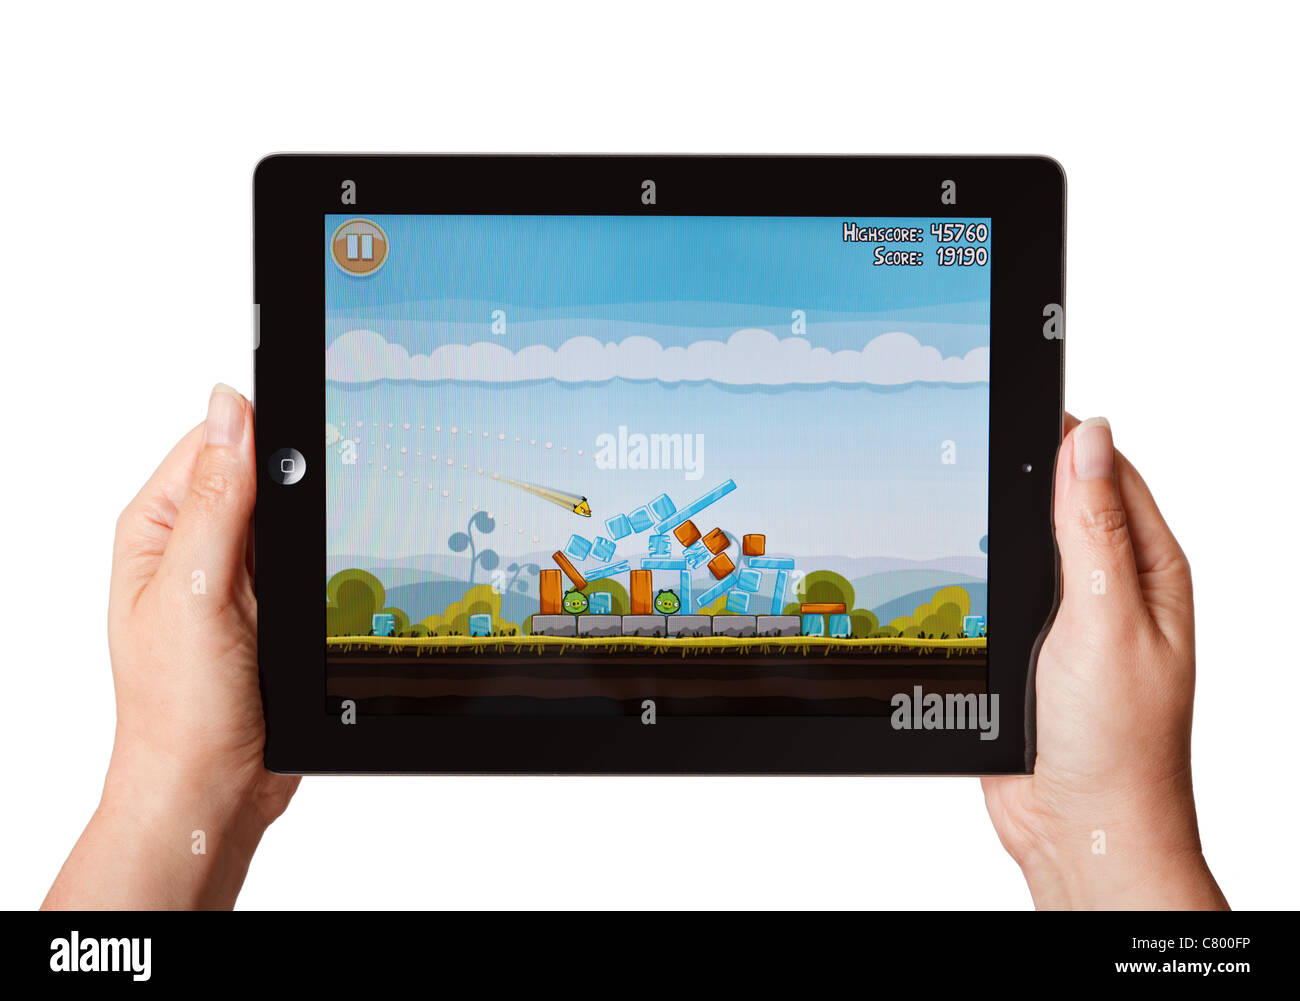 Manos sosteniendo un iPad jugando el juego Angry Birds Foto de stock